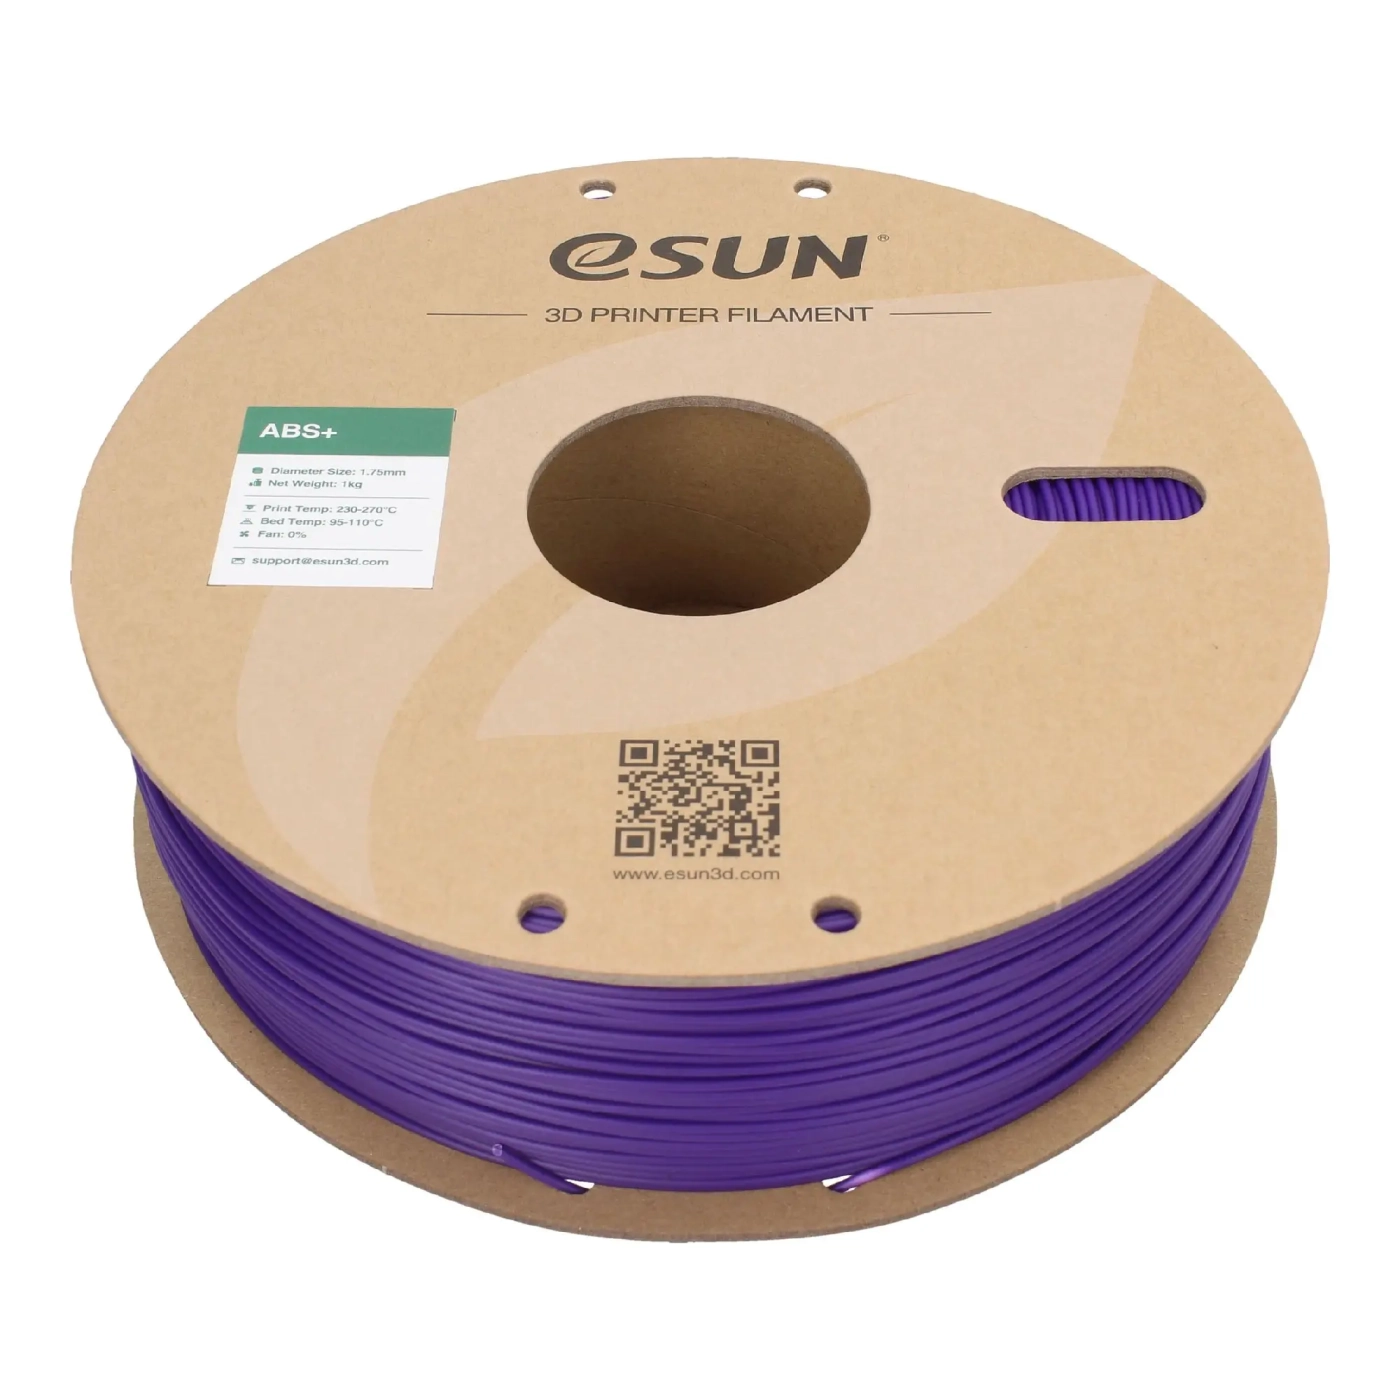 Купить ABS Plus Filament (пластик) для 3D принтера Esun 1кг, 1.75мм, фиолетовый (ABS+175Z1) - фото 2